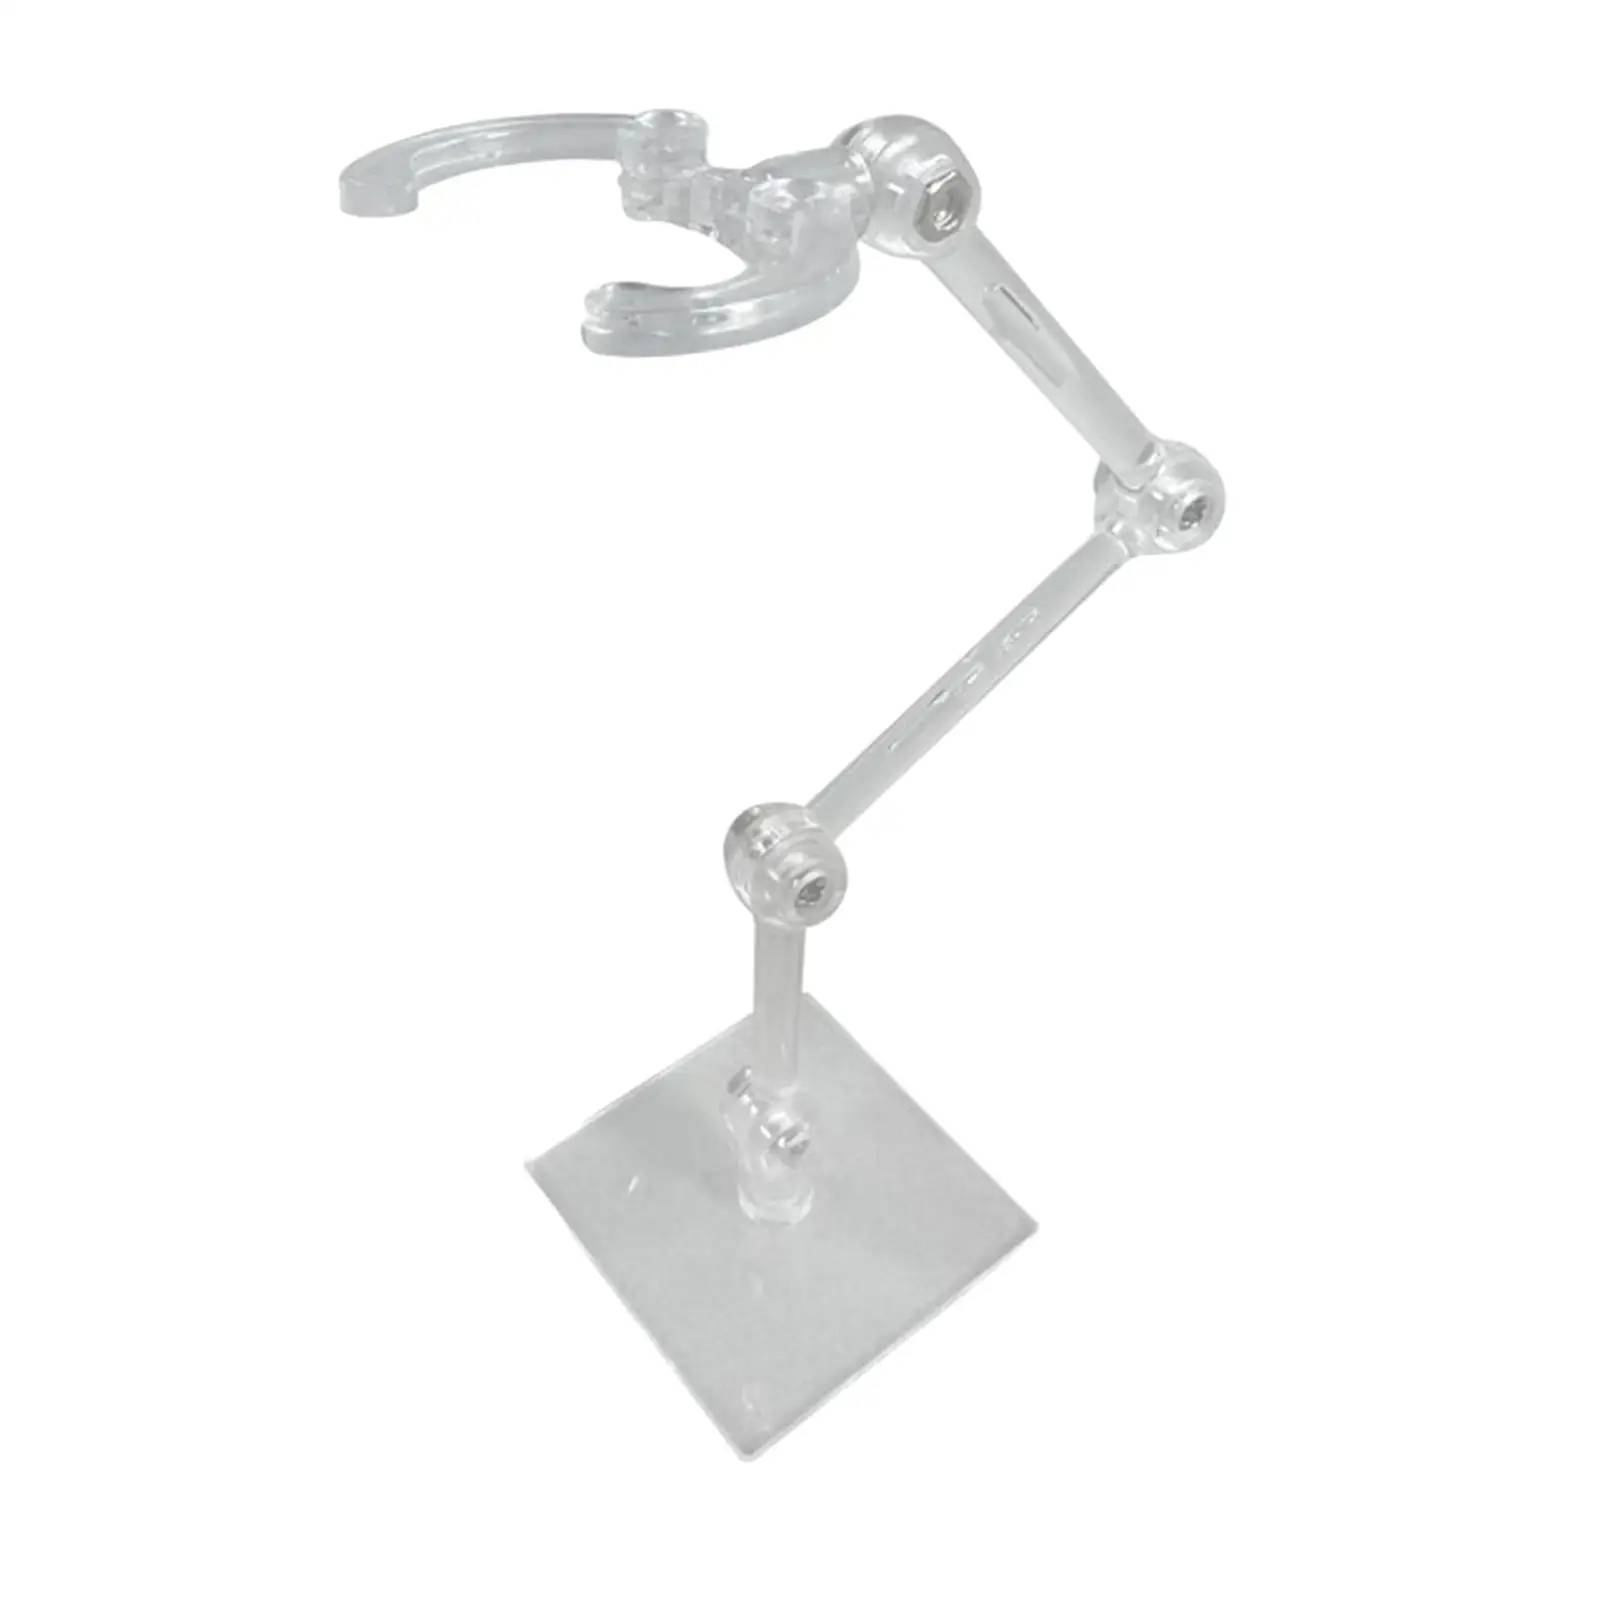  Flexible Rack Support Holder Adjustable Doll Model Bracket for Mini Model Figure Decor Crafts